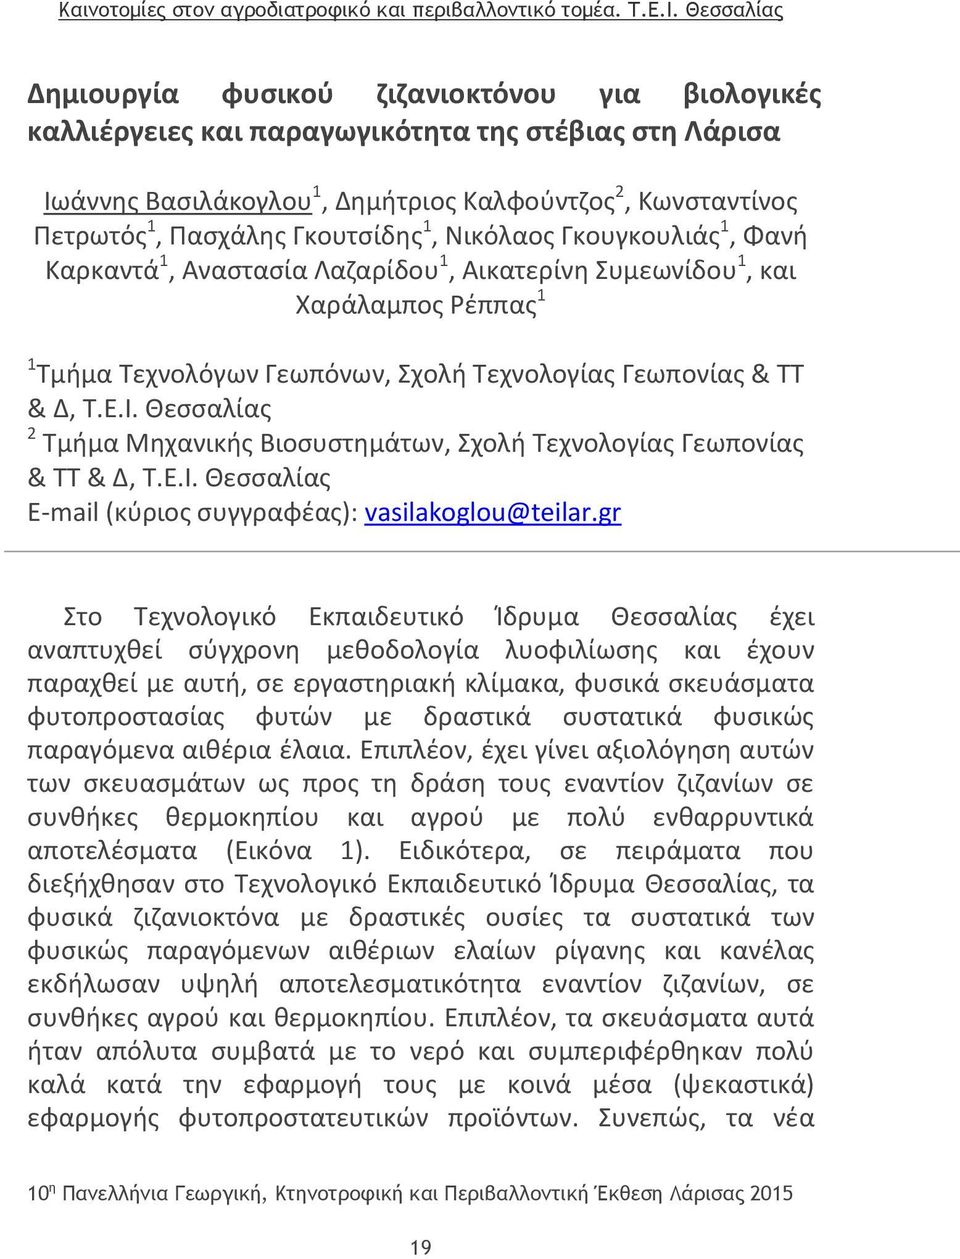 Θεσσαλίας 2 Τμήμα Μηχανικής Βιοσυστημάτων, Σχολή Τεχνολογίας Γεωπονίας & ΤΤ & Δ, Τ.Ε.Ι. Θεσσαλίας E-mail (κύριος συγγραφέας): vasilakoglou@teilar.